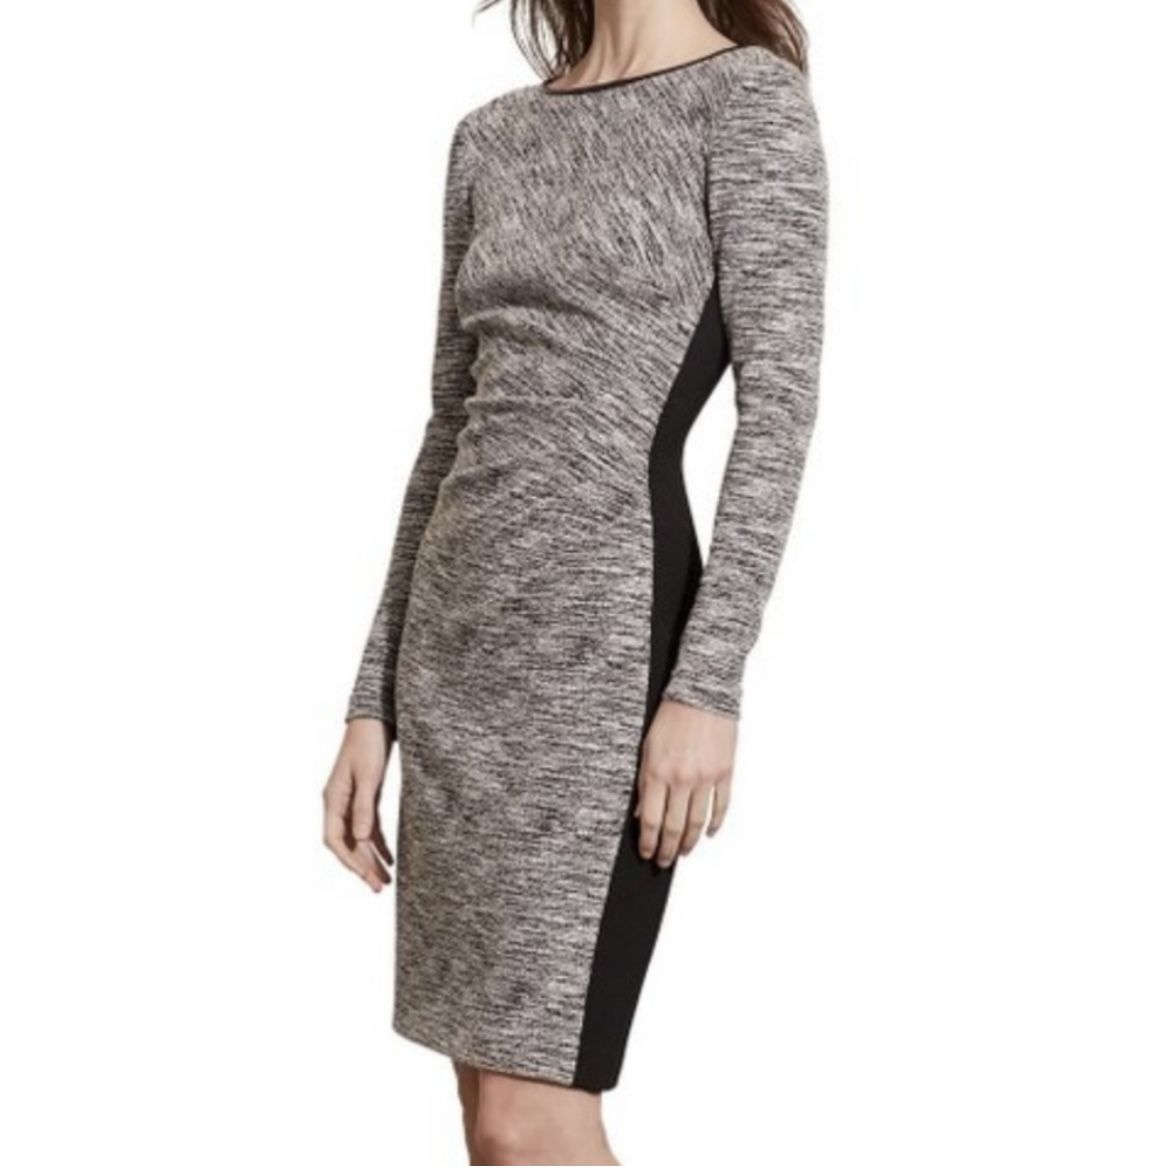 Lauren Ralph Lauren Black & White Tweed Dress - Size 14